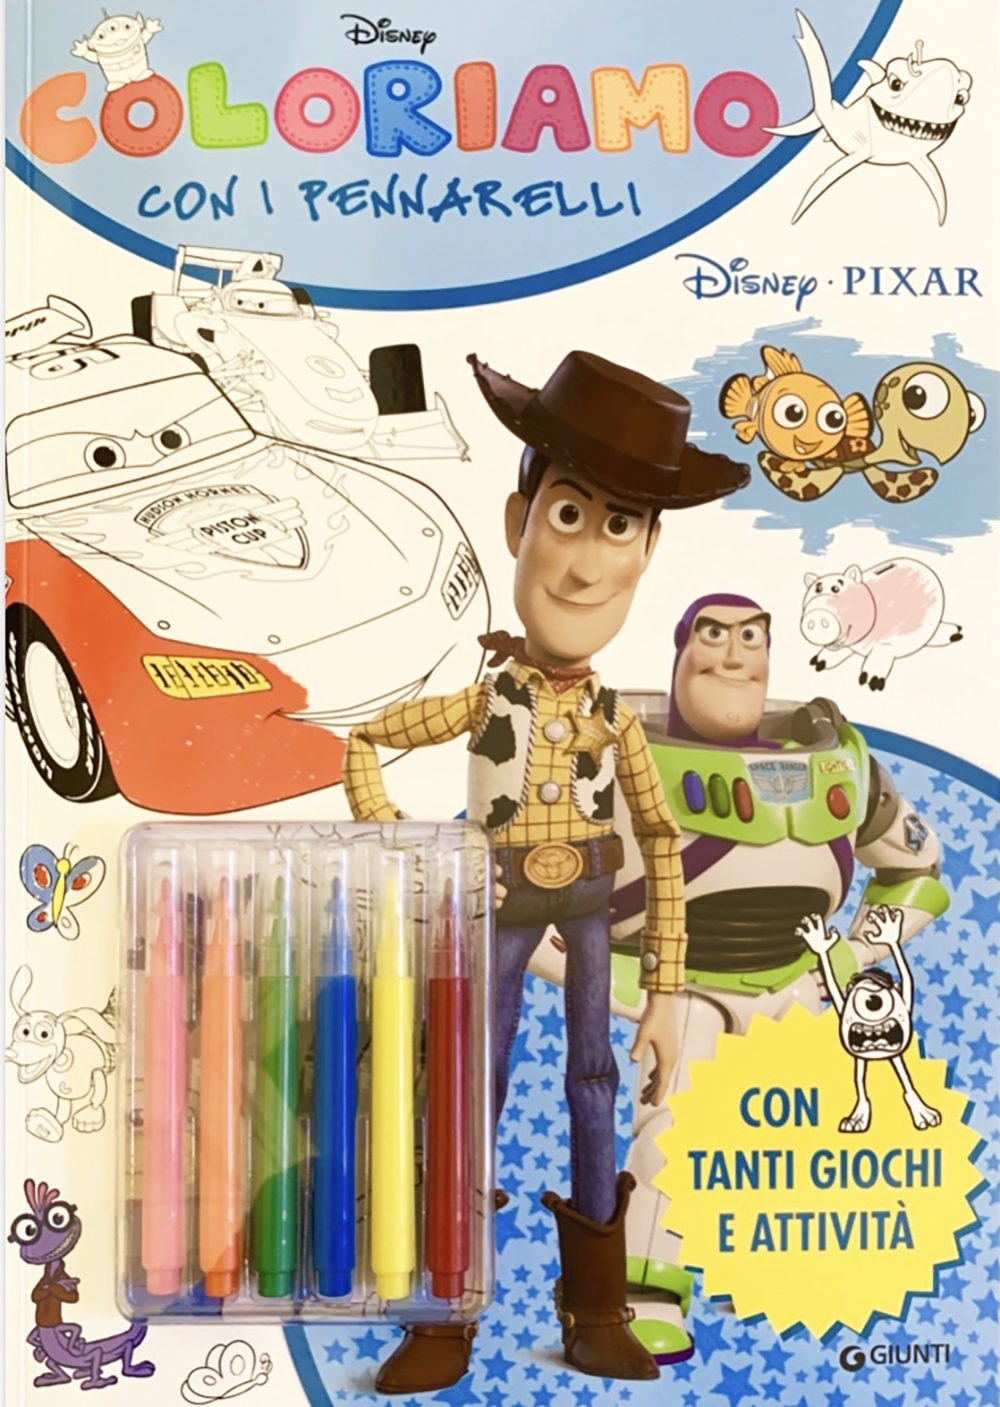 Coloriamo con i pennarelli - Disney/Pixar 